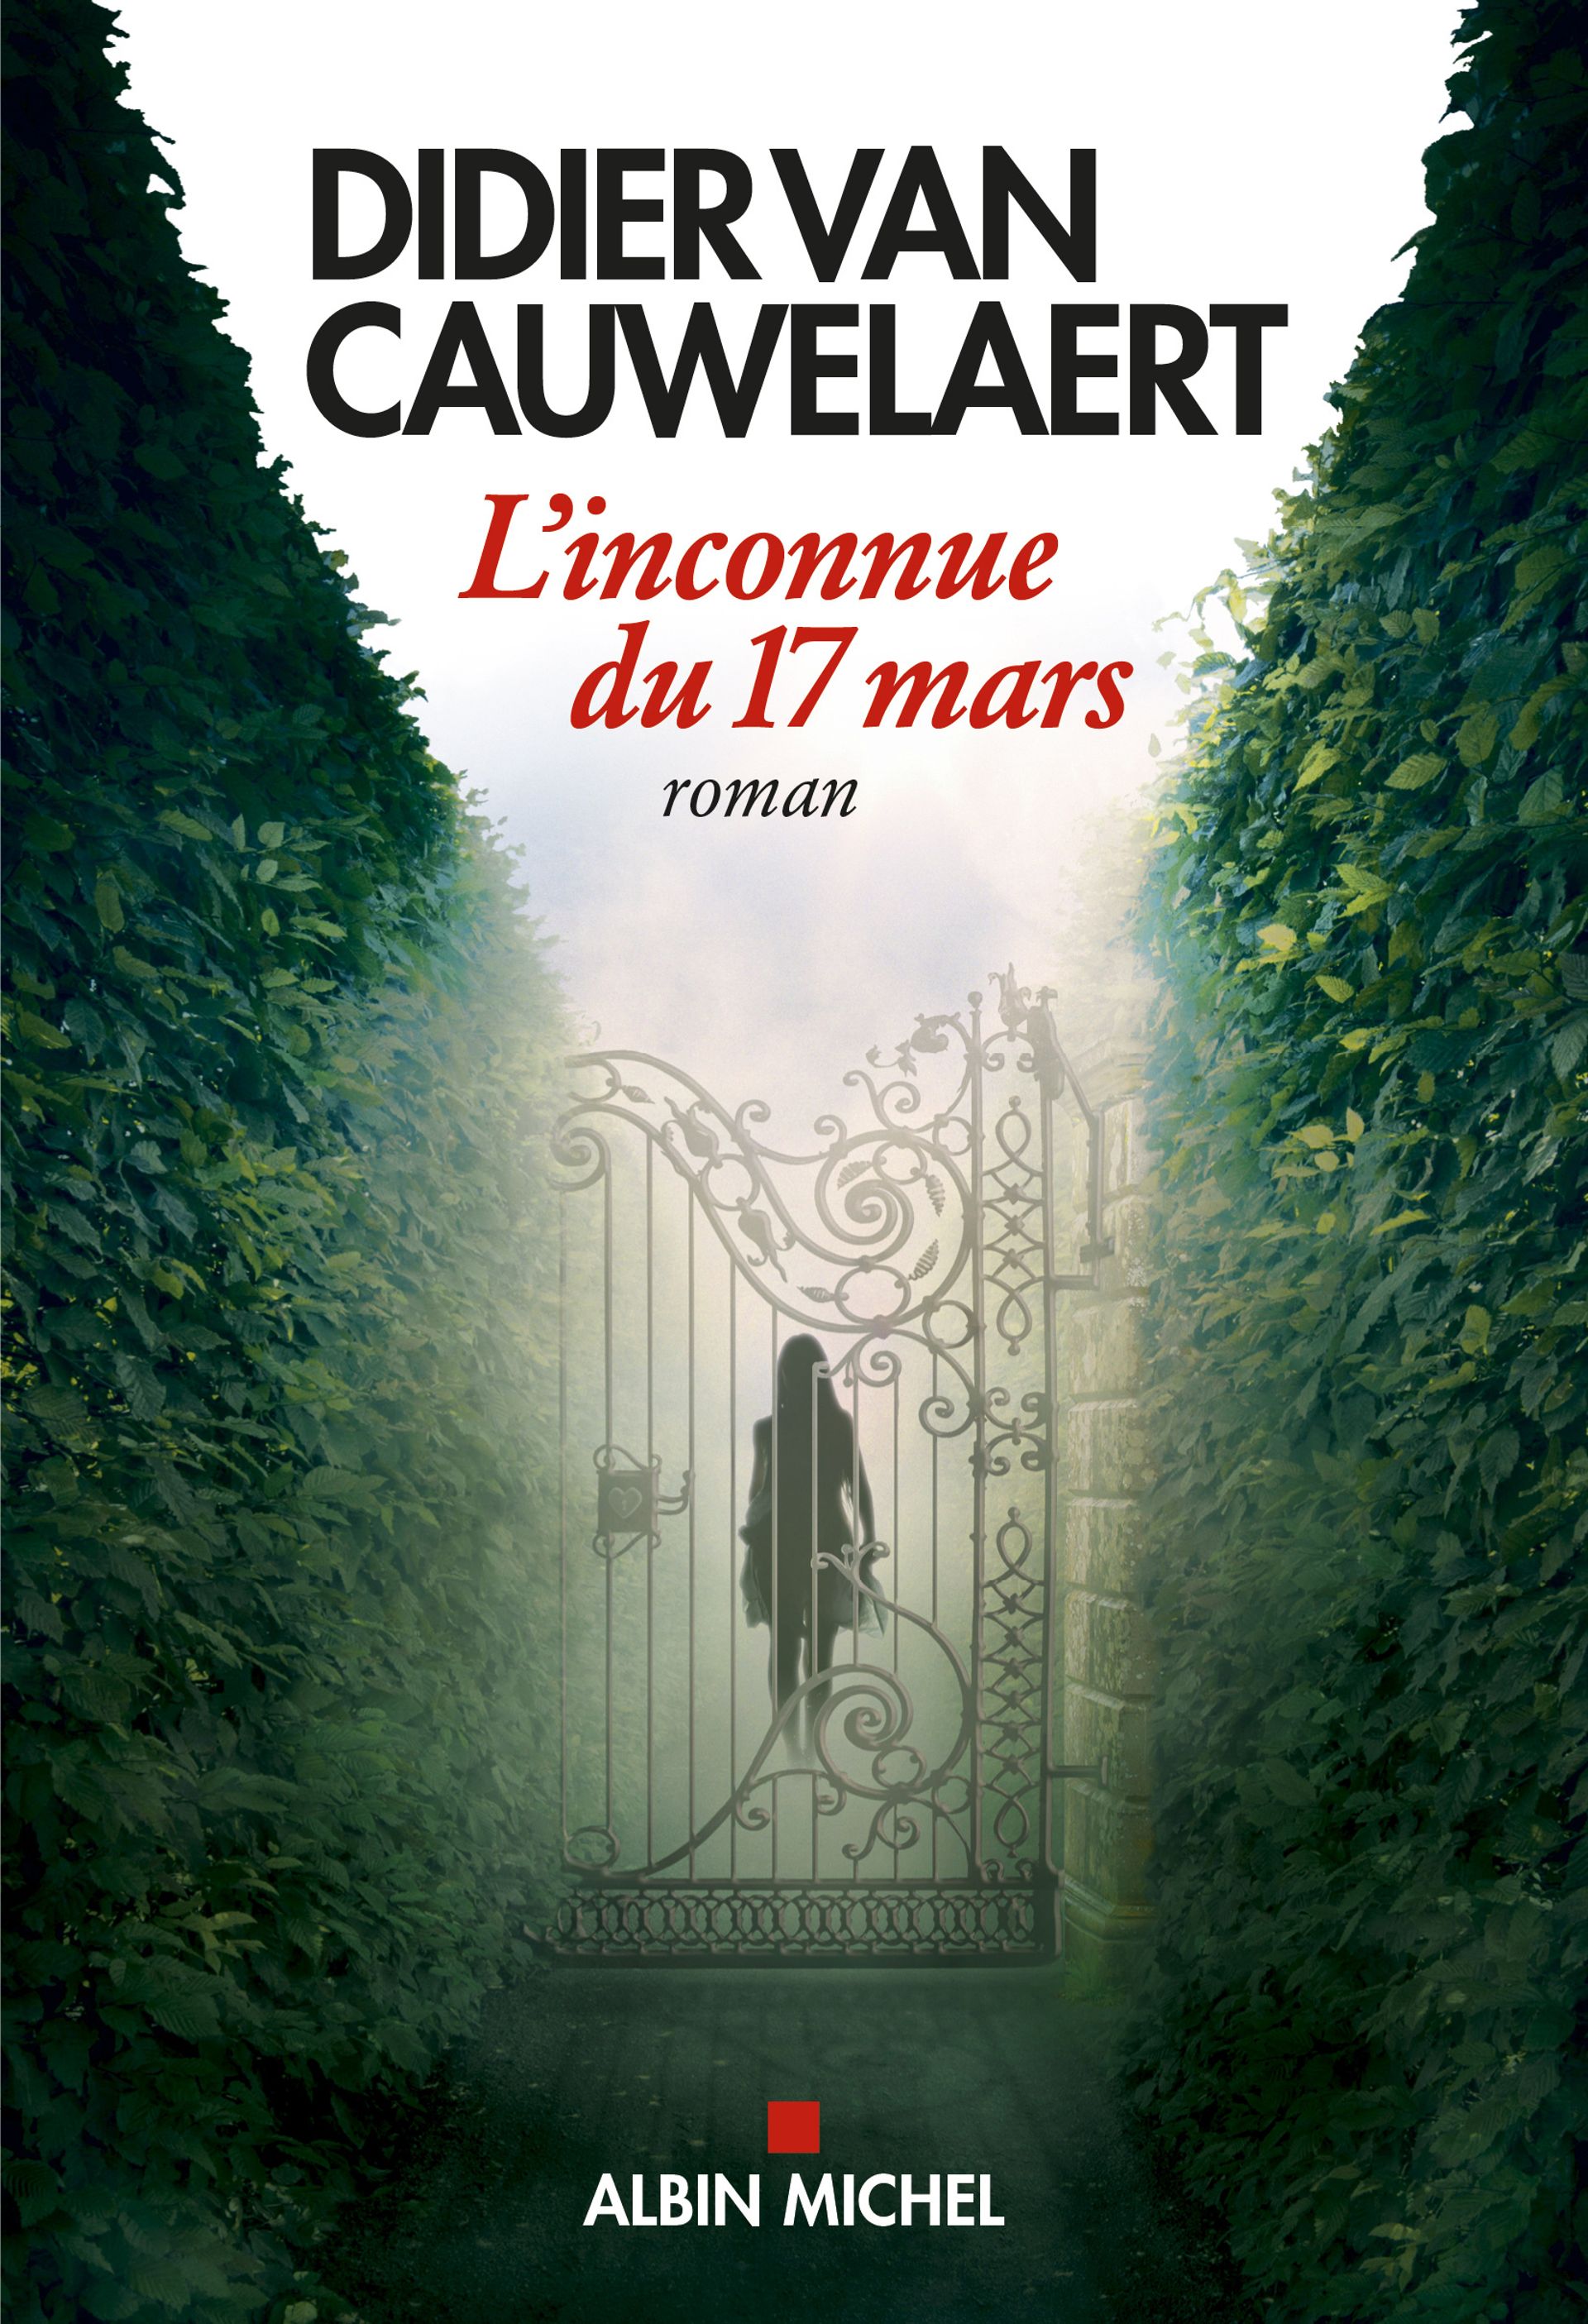 Didier van Cauwelaert et "L'inconnue du 17 mars" : "C'était une nécessité vitale d'écrire pendant le confinement"